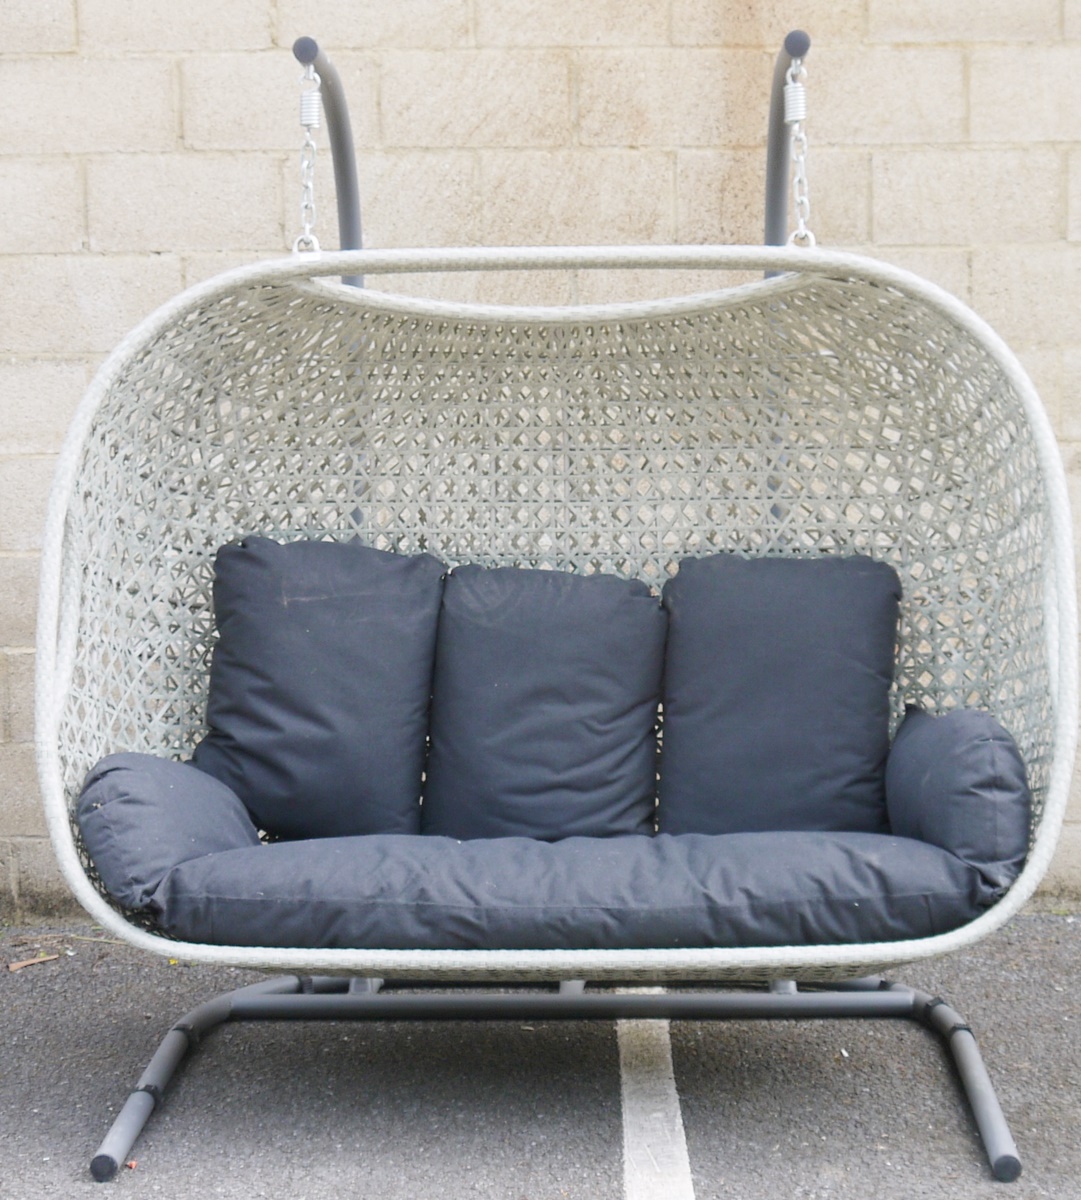 Bramblecrest three-seater cocoon garden swing seat